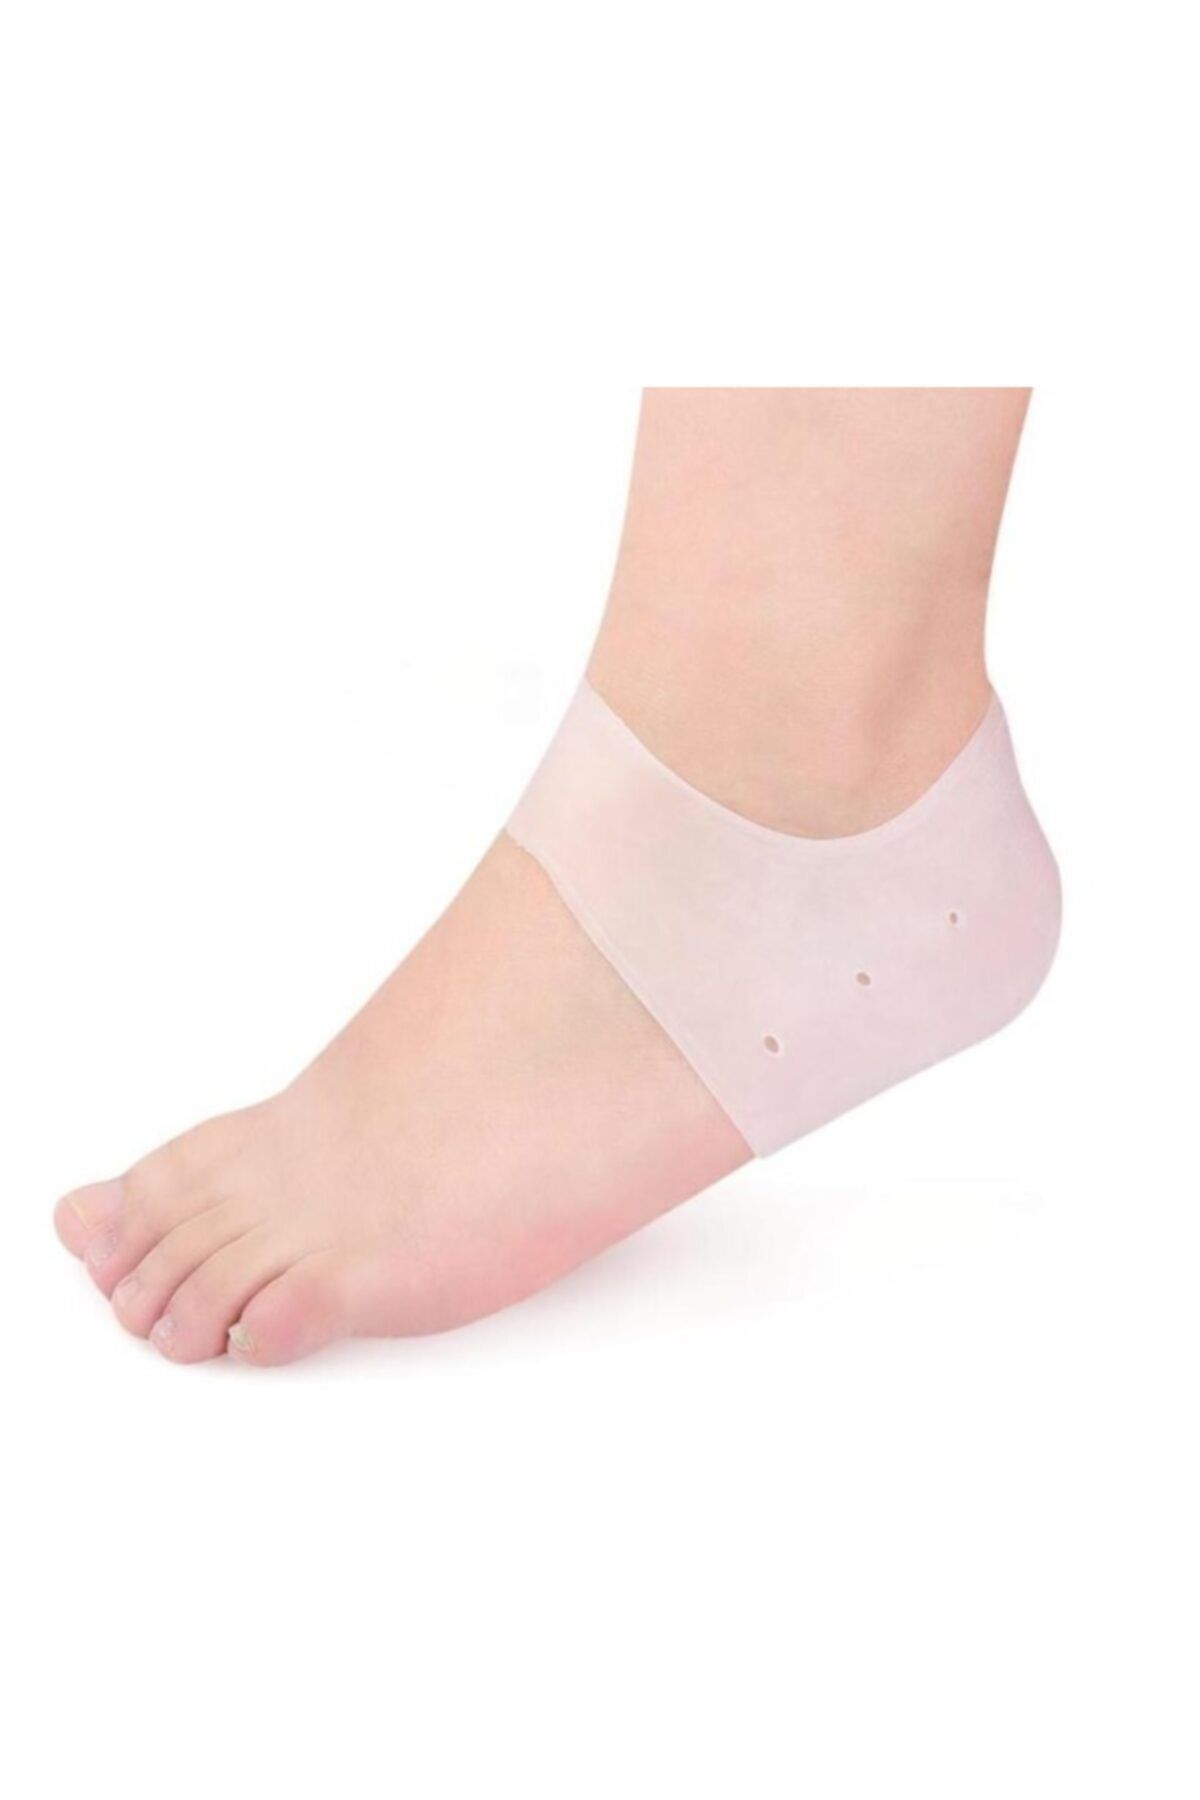 Skygo Silikon Topuk Çorabı Beyaz Renk